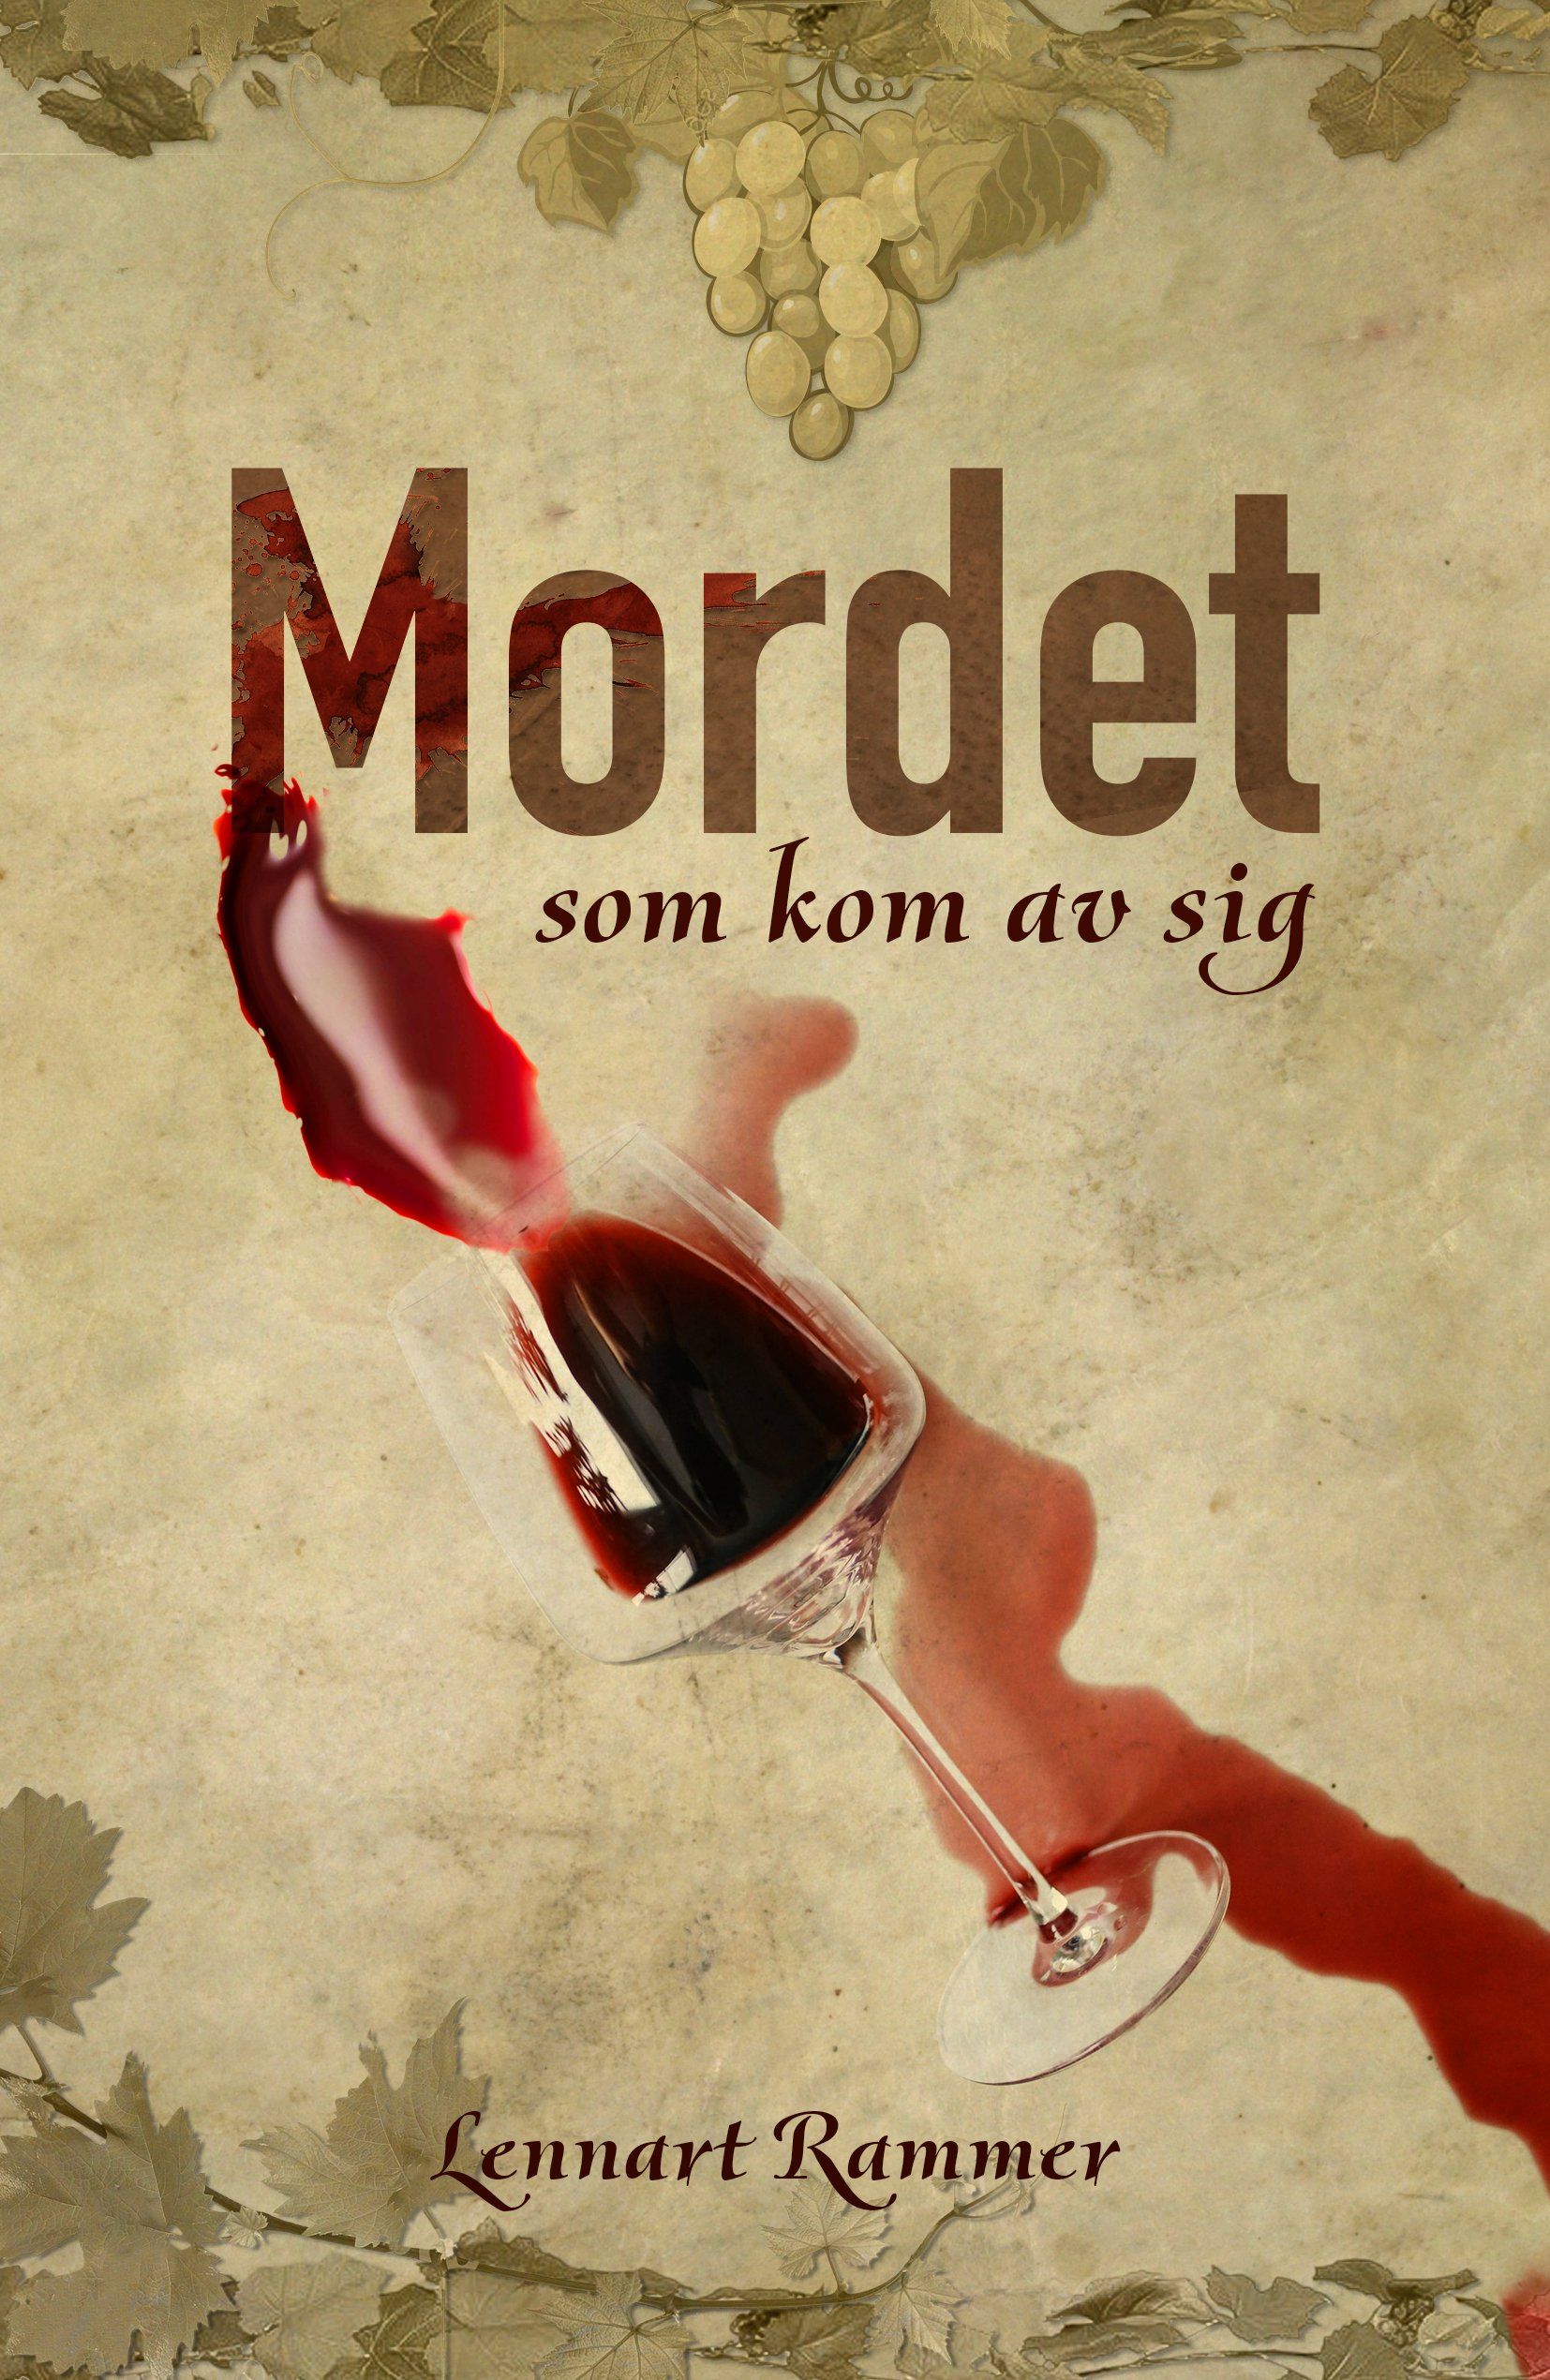 Boken Mordet som kom av sig är skriven av Lennart Rammer på Stevali Bokförlag.